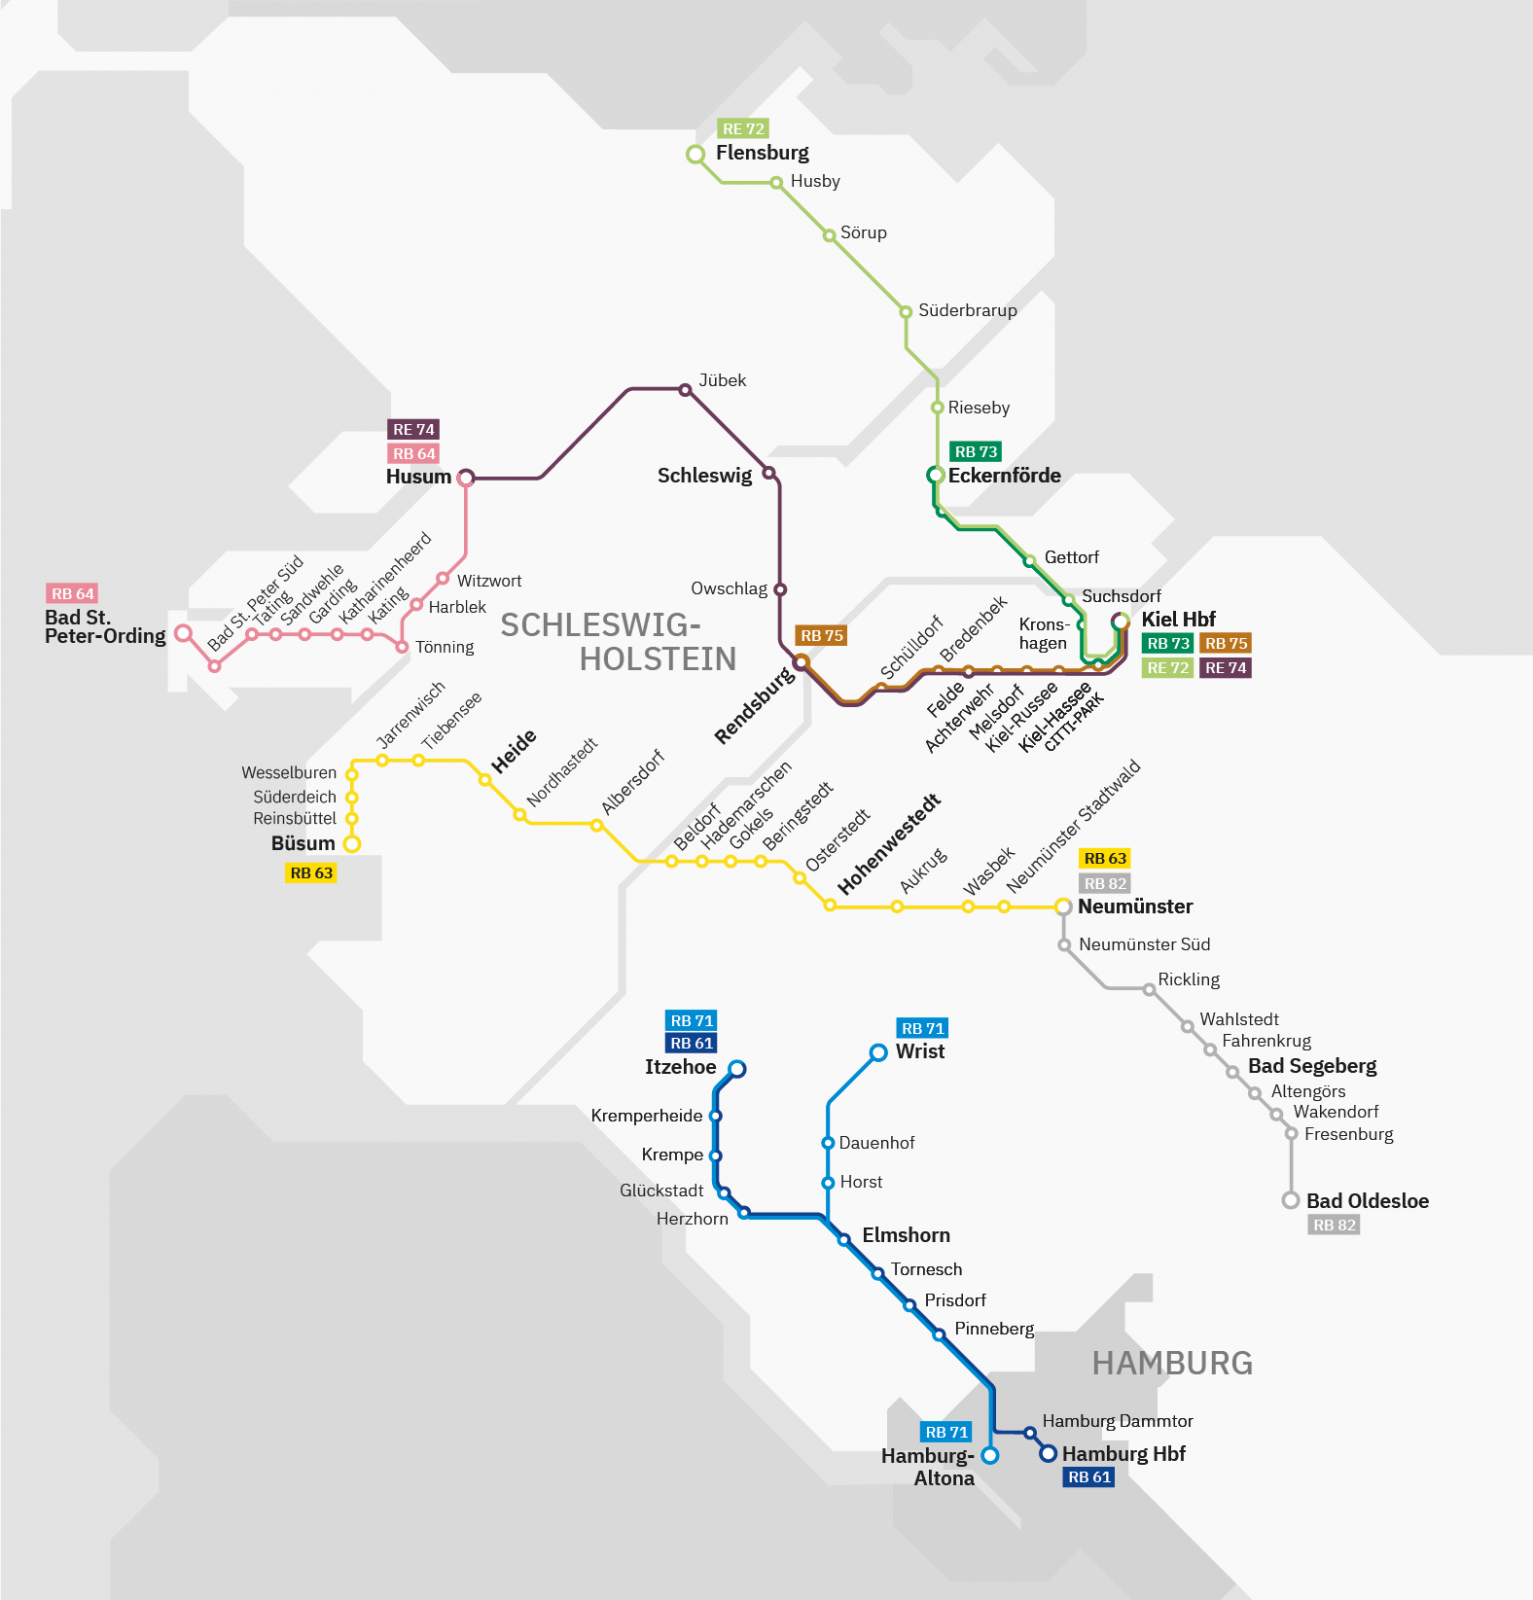 Karte vom nordbahn-Netz